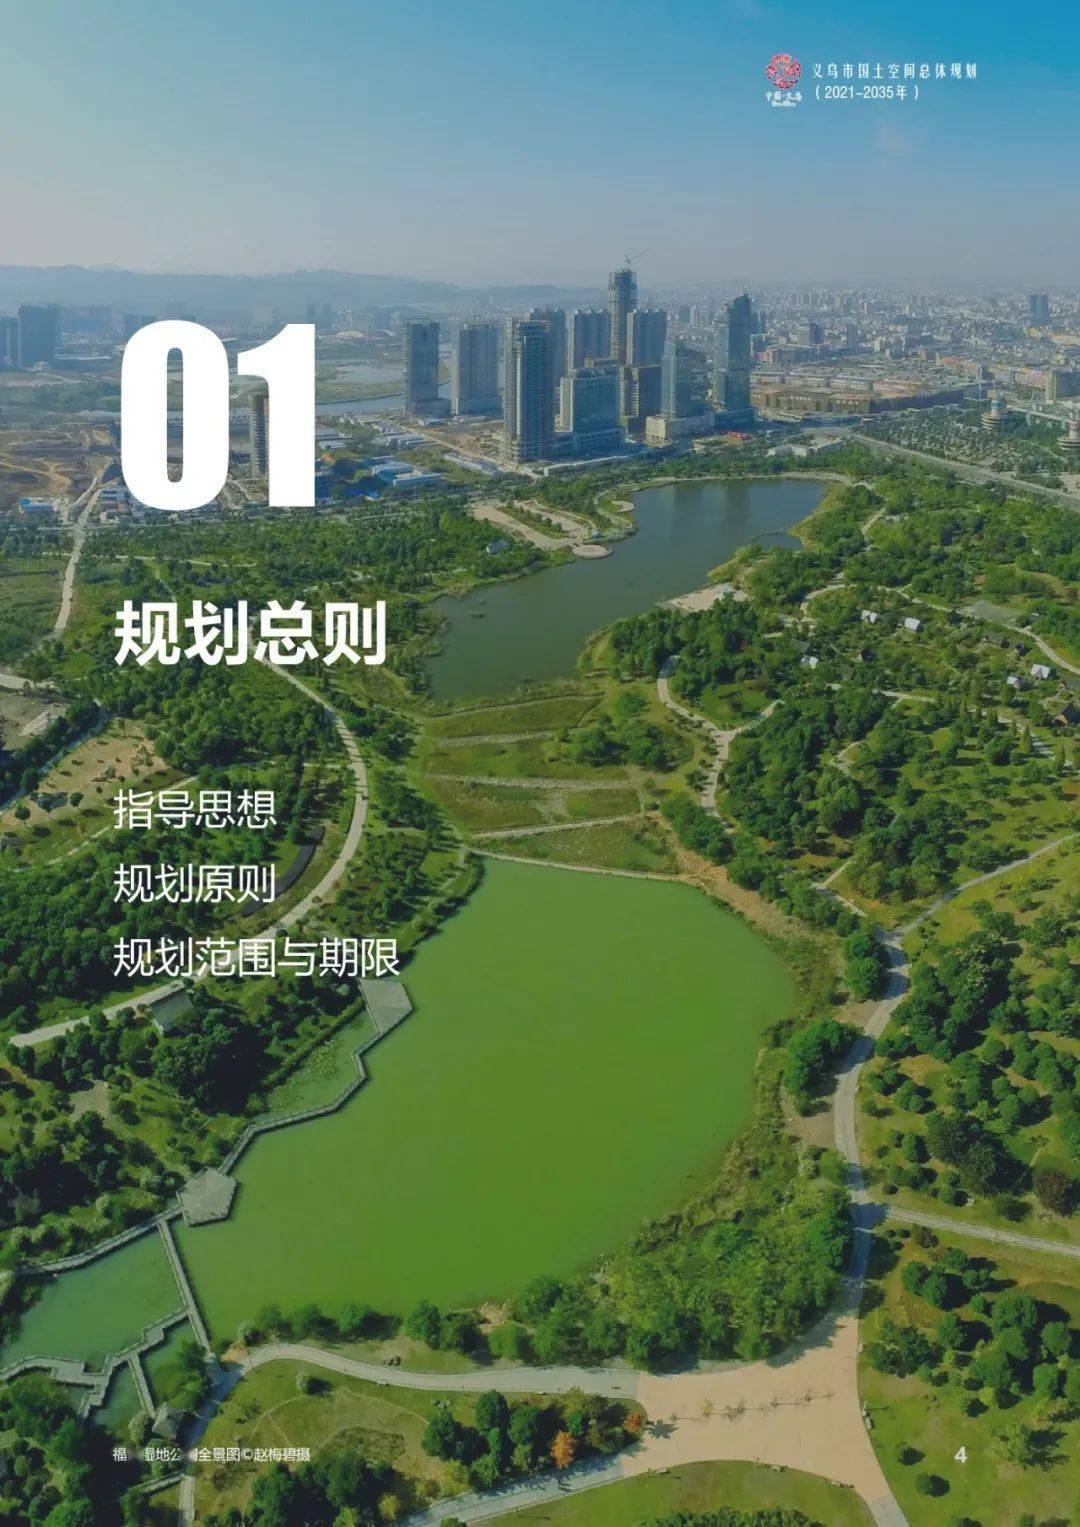 来源:义乌市自然资源和规划局返回搜狐,查看更多